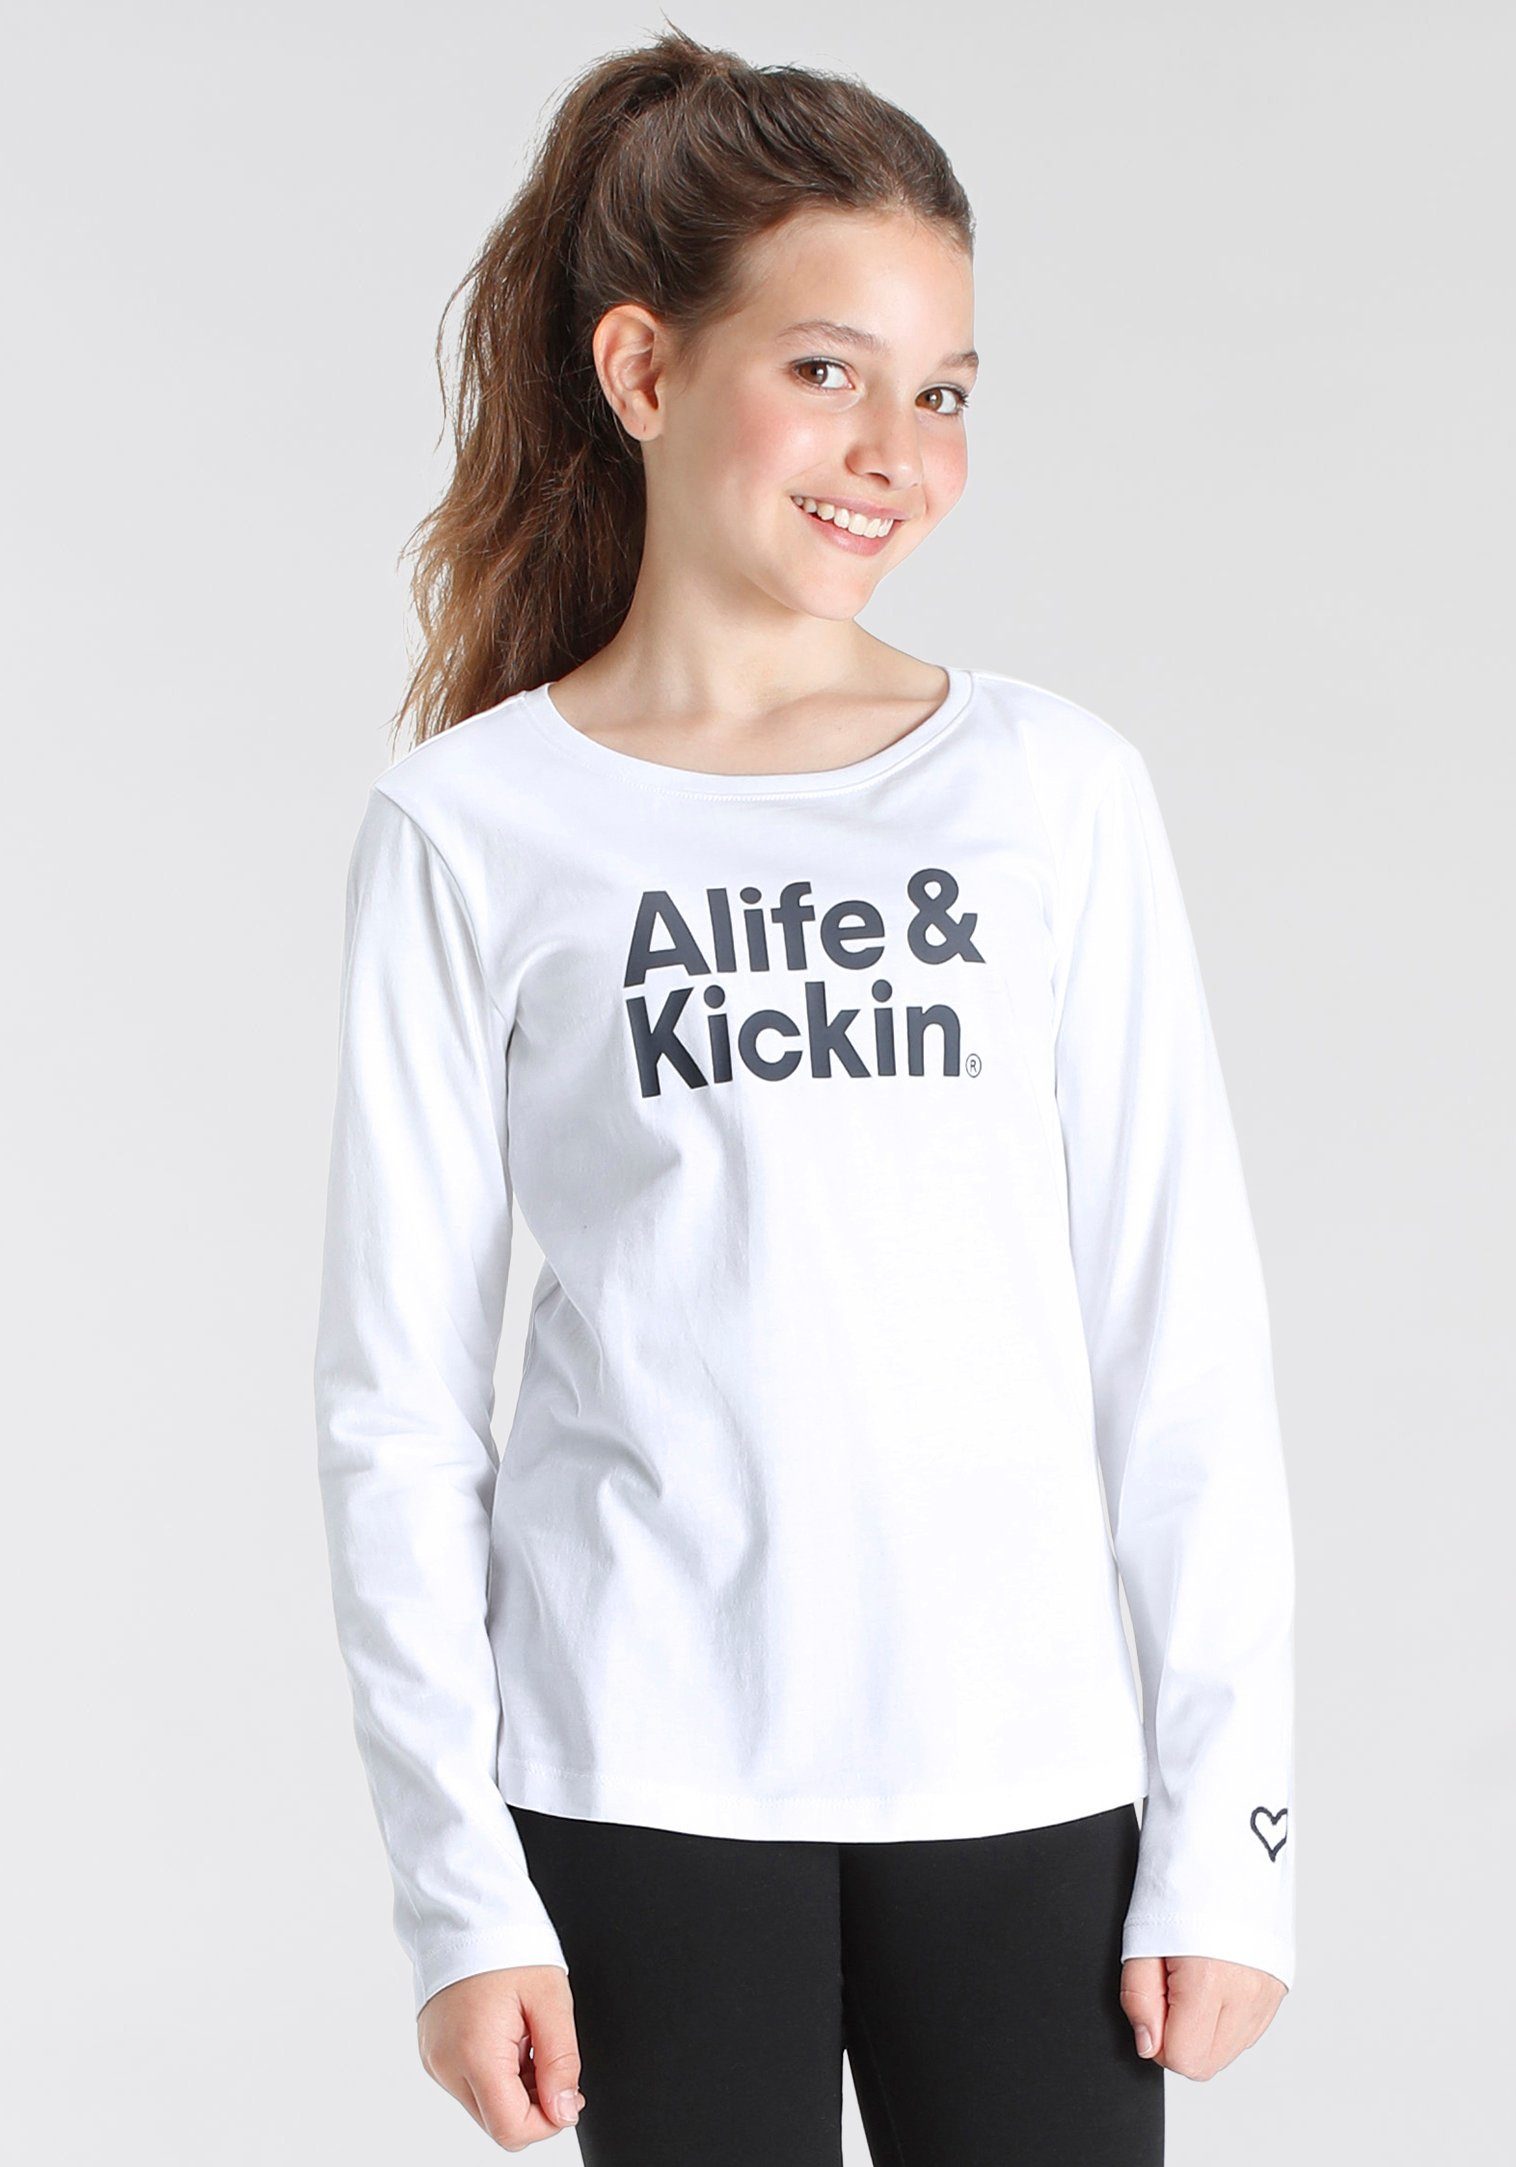 NEUE Druck Kickin Alife mit & Kids. MARKE! Alife Kickin & Langarmshirt für Logo